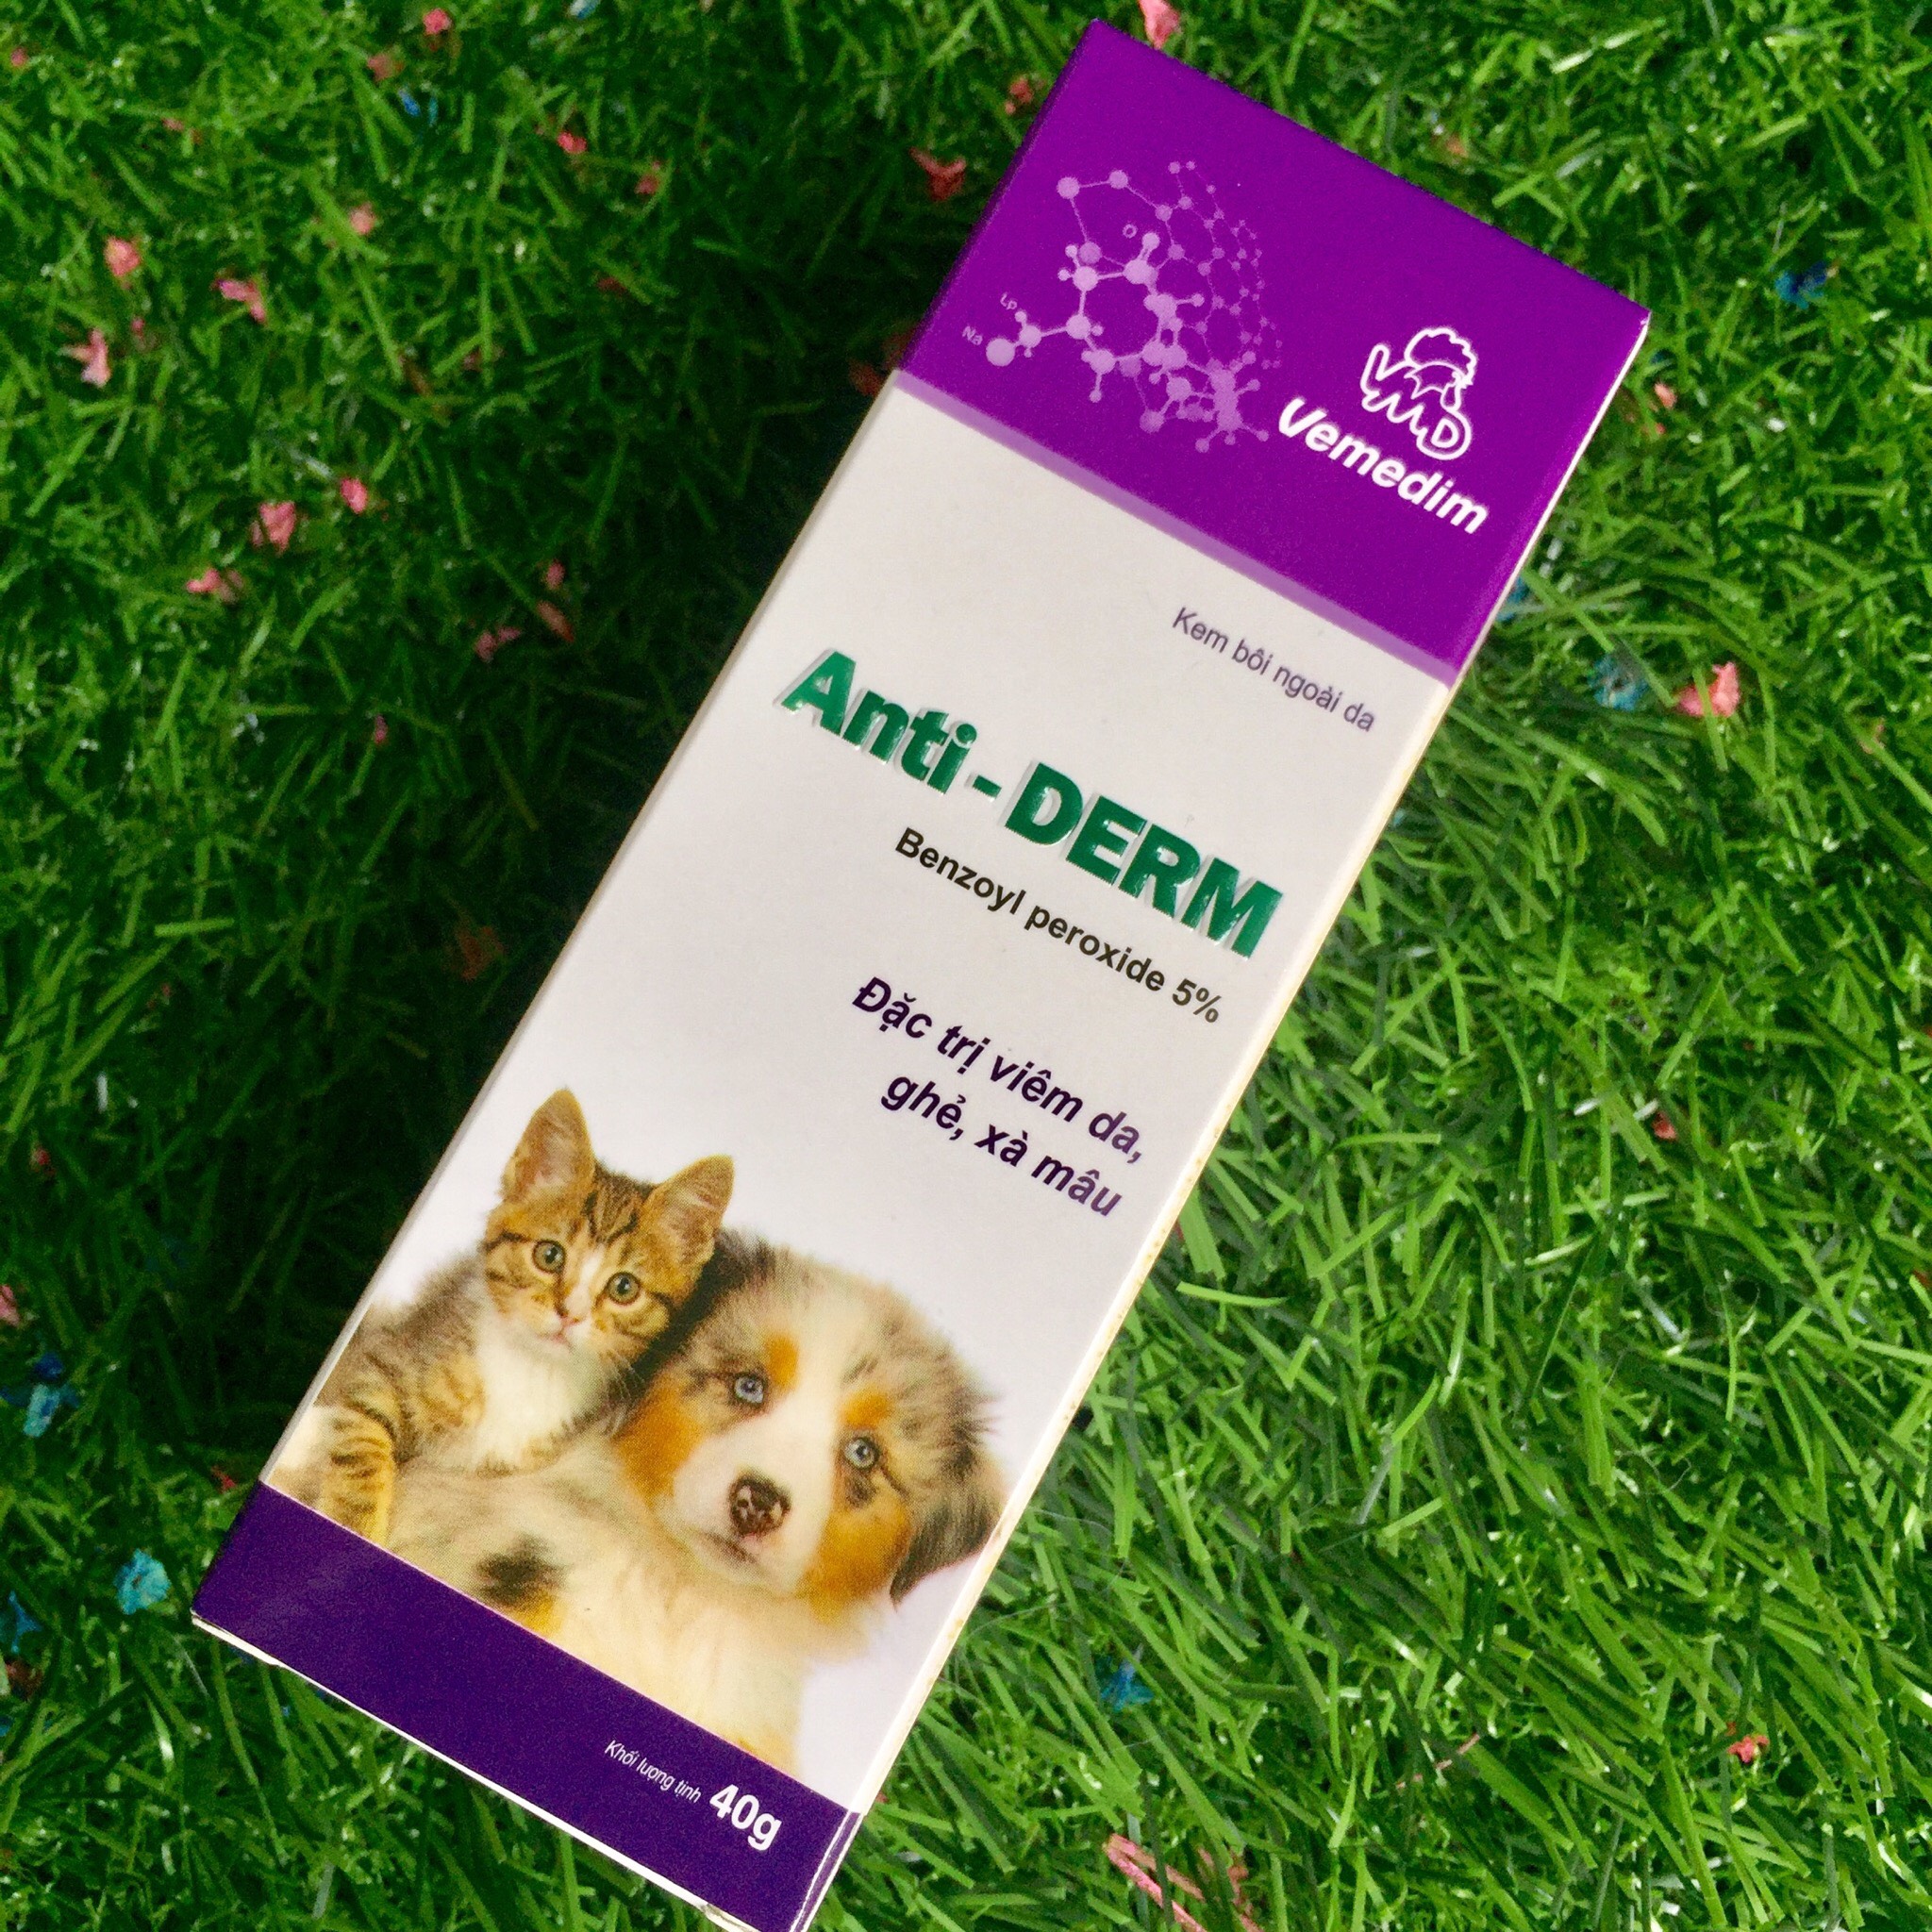 Thuốc bôi Anti Derm đặc trị viêm da, ghẻ, xà mâu cho chó mèo - Xudapet